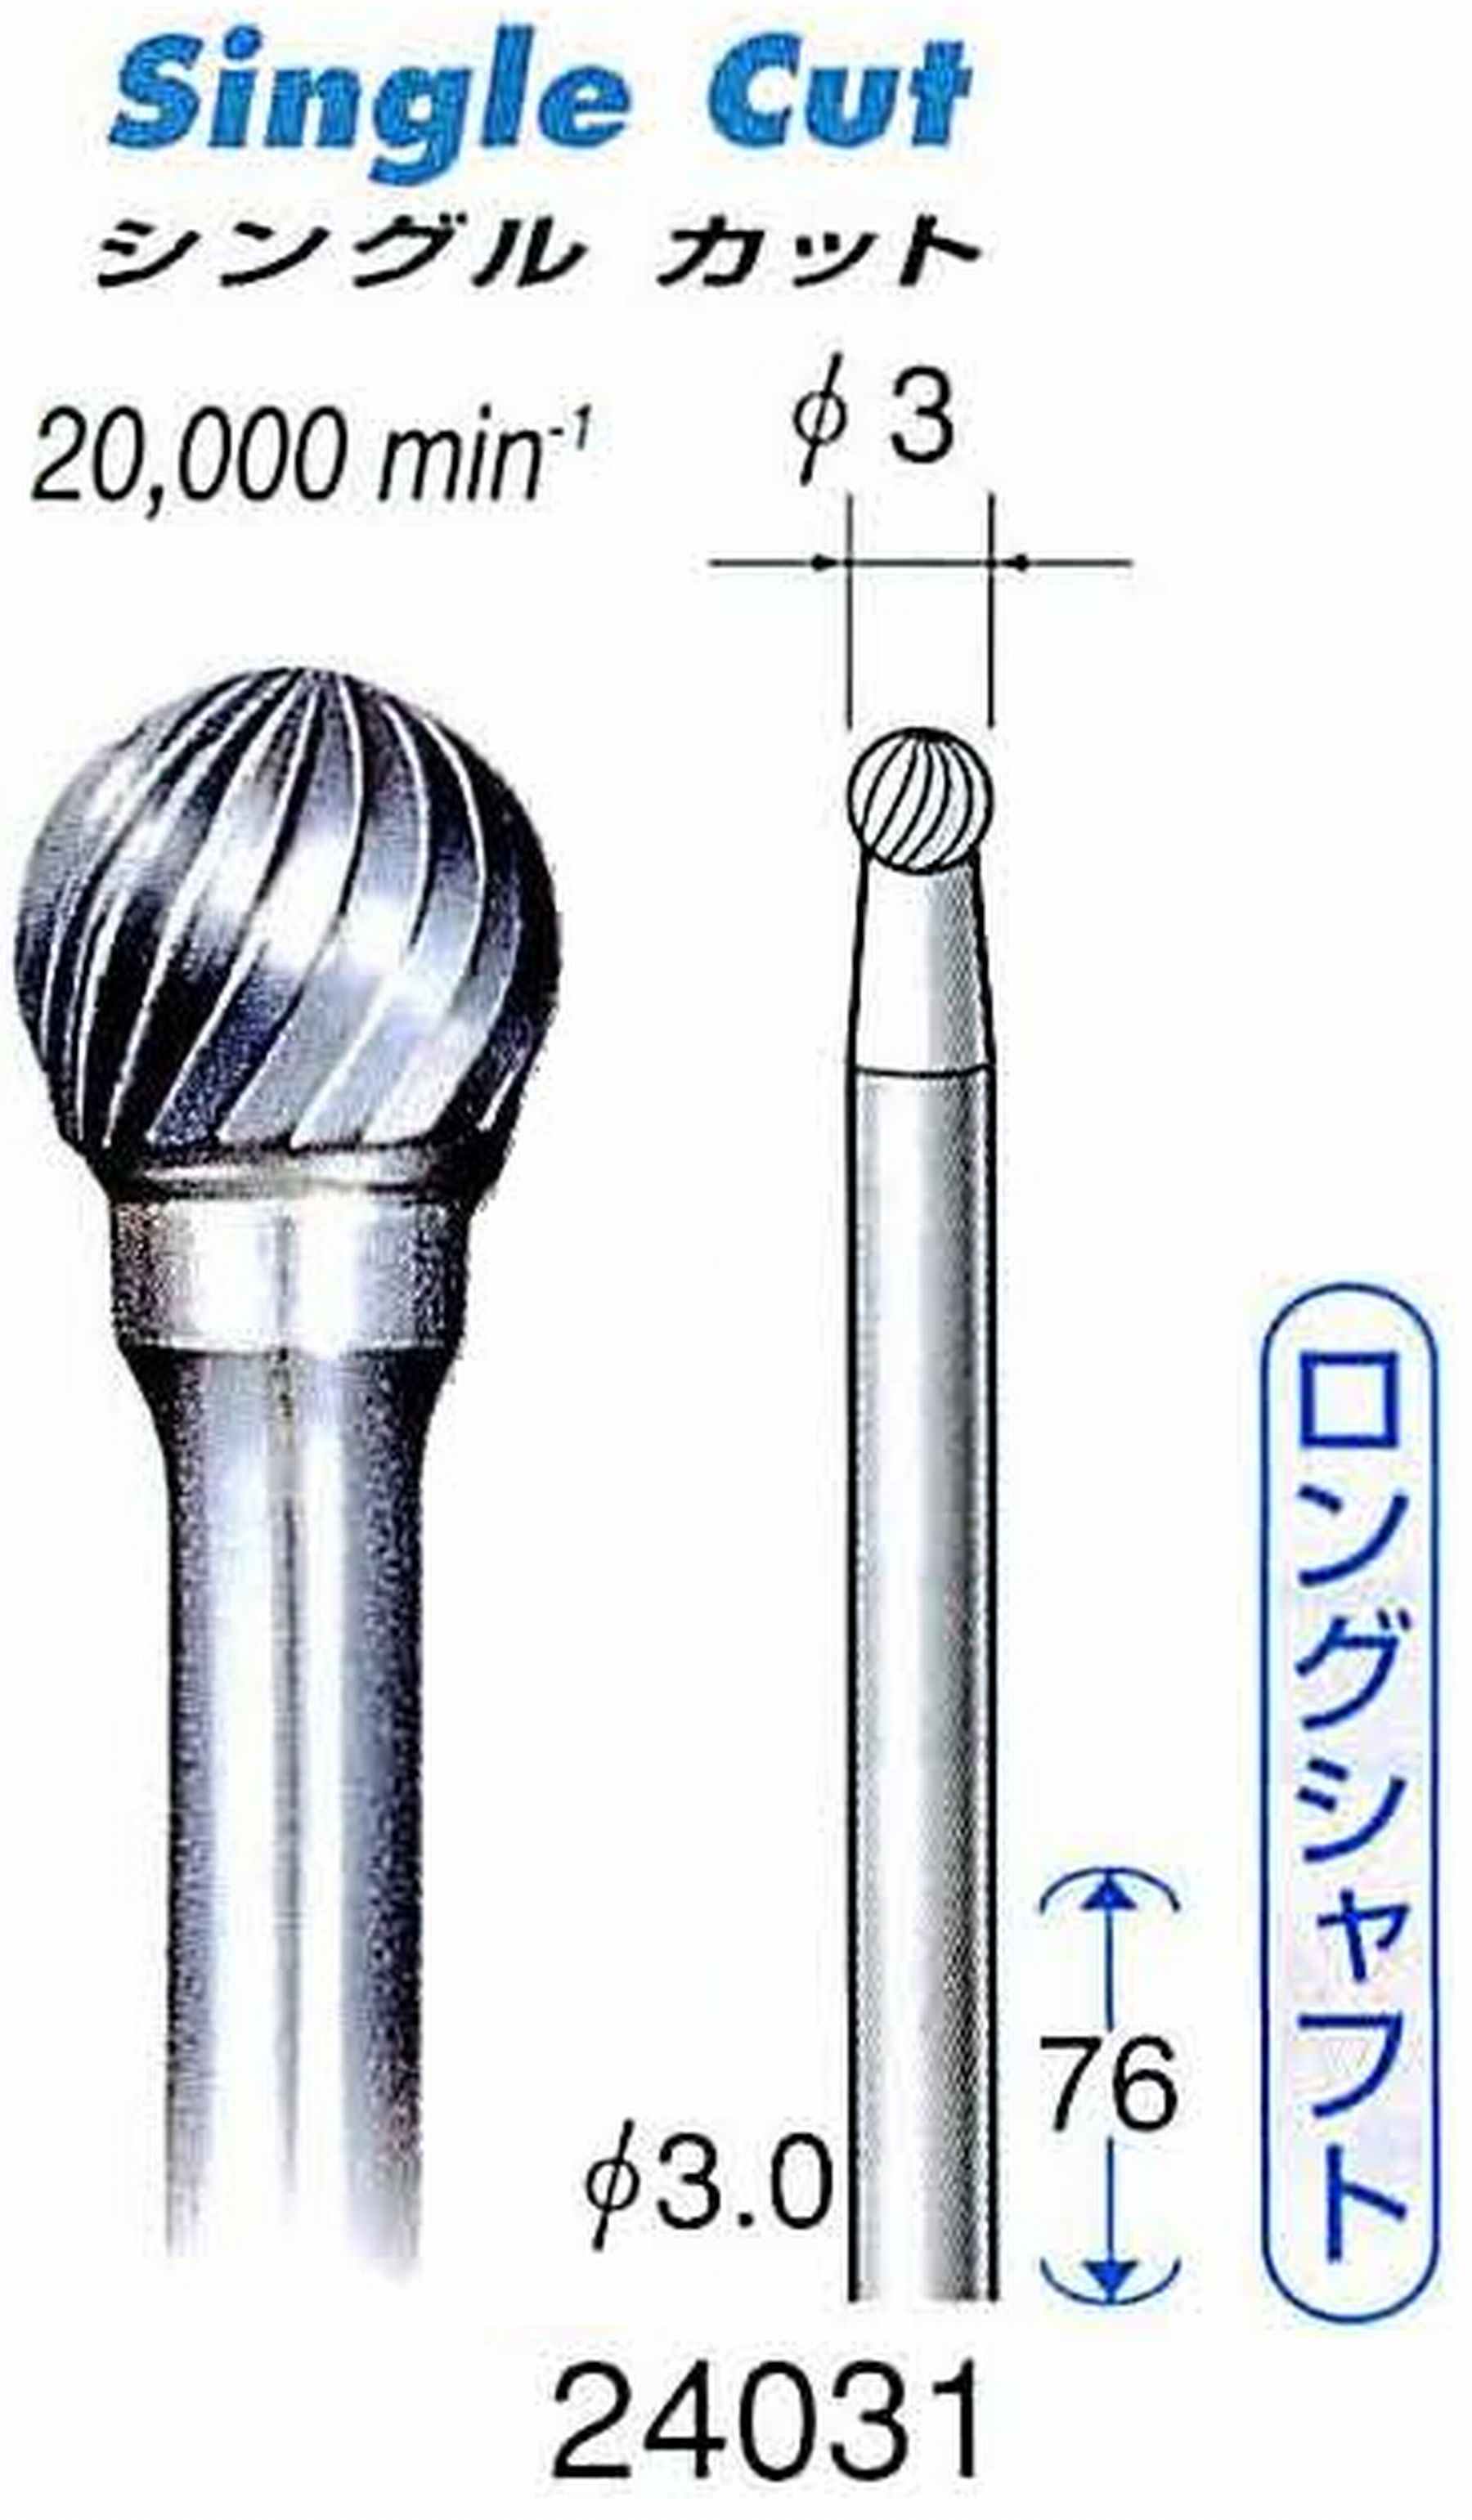 ナカニシ/NAKANISHI 超硬カッター(ロングシャフト) 軸径(シャンク)φ3.0mm 24031